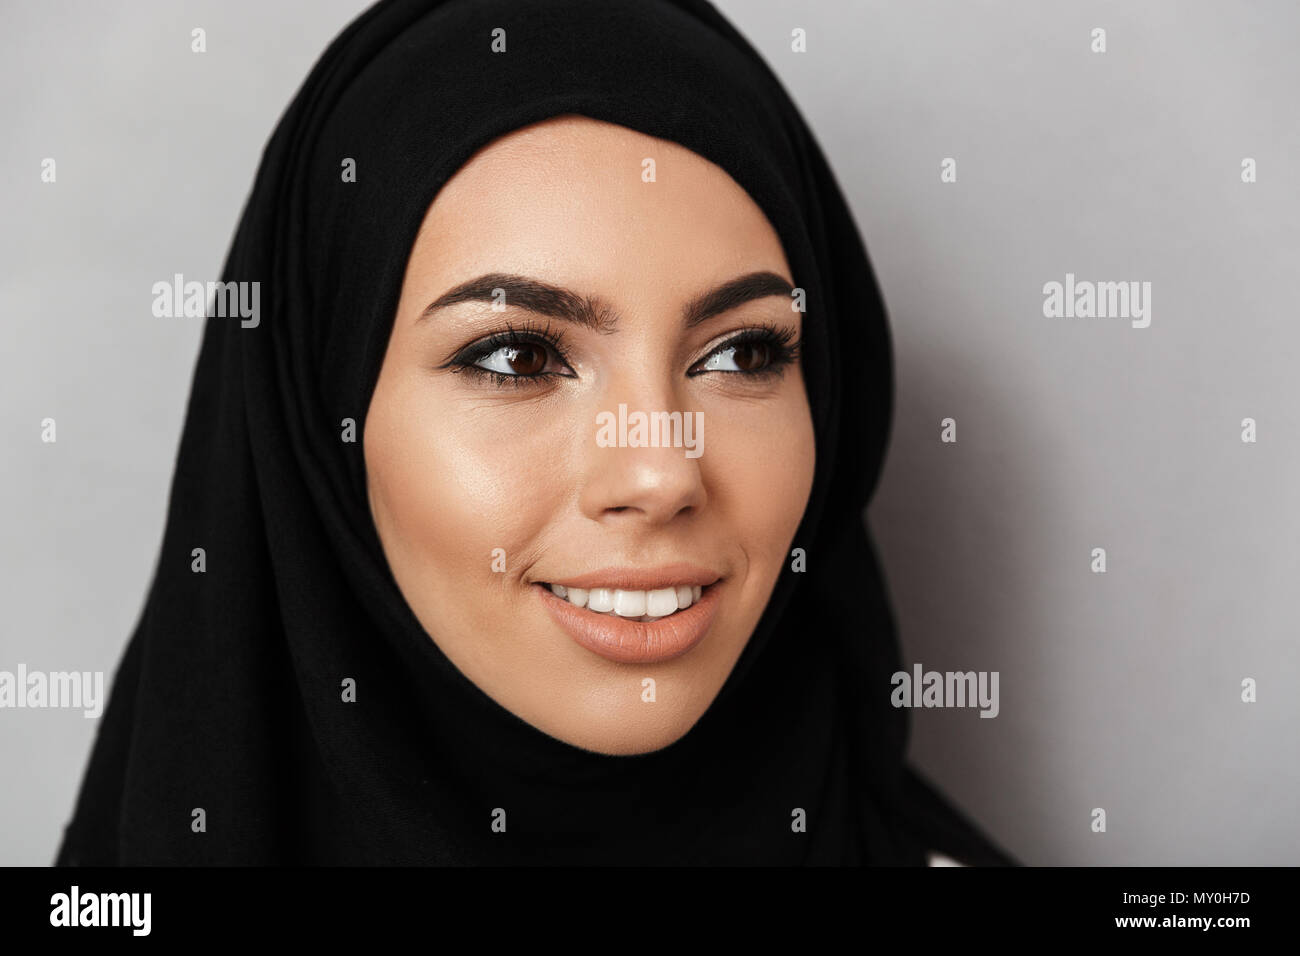 Portrait Nahaufnahme des muslimischen Gebets Frau 20 s in religiösen  Kopftuch mit orientalischen Make-up und lächelnd zur Seite Blick auf grauem  Hintergrund Stockfotografie - Alamy